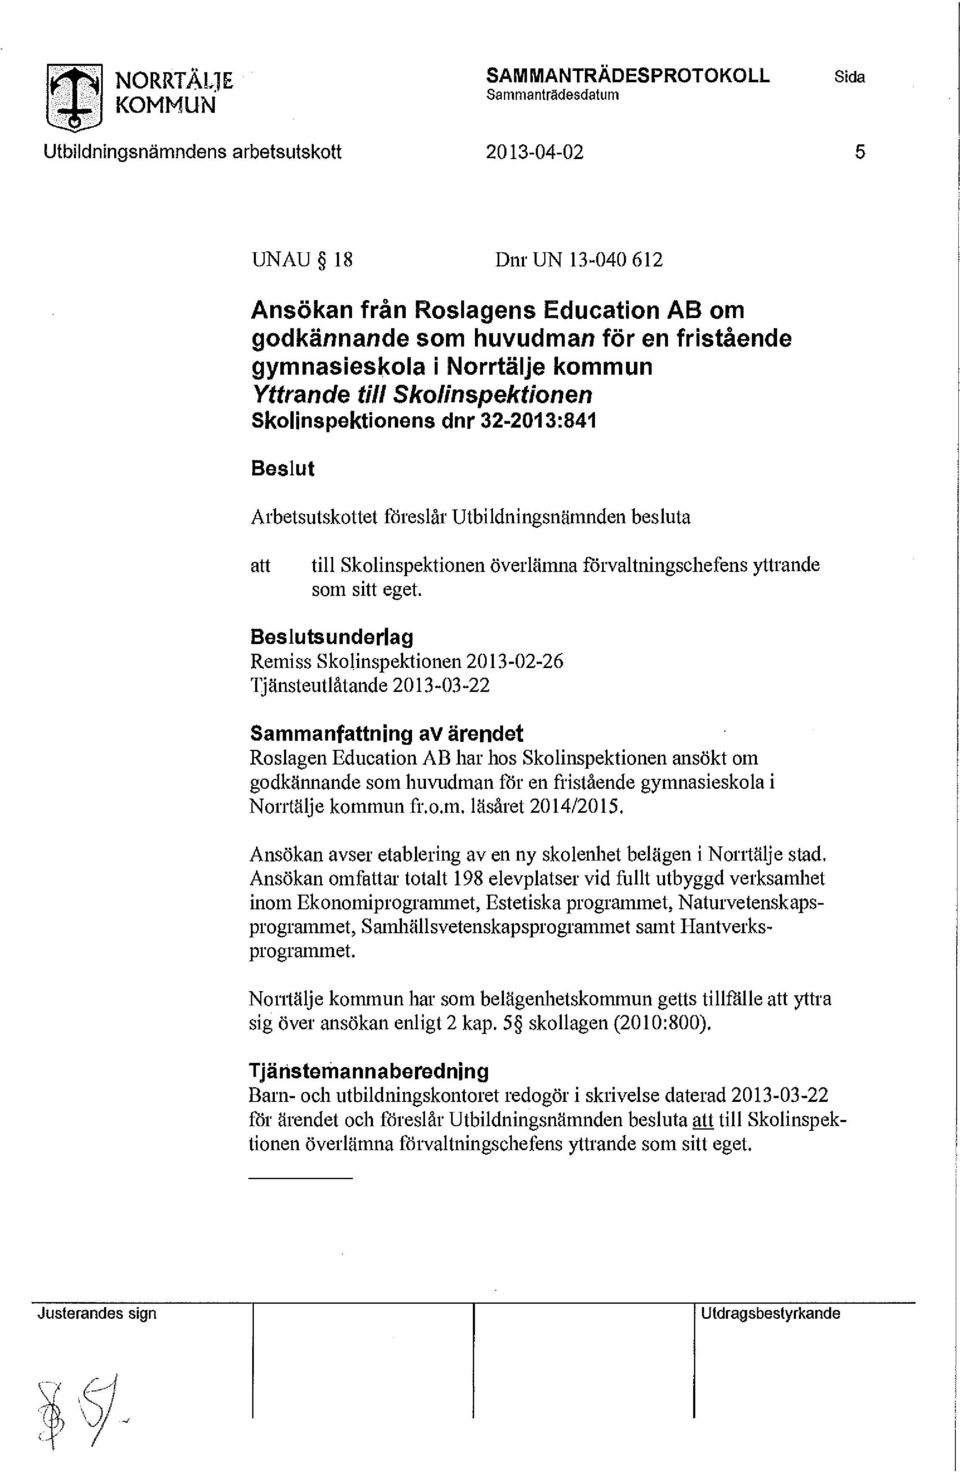 Skolinspektionen ansökt om godkännande som huvudman för en fristående gymnasieskola i Norrtälje kommun fr.o.m. läsåret 2014/2015. Ansökan avser etablering av en ny skolenhet belägen i Norrtälje stad.